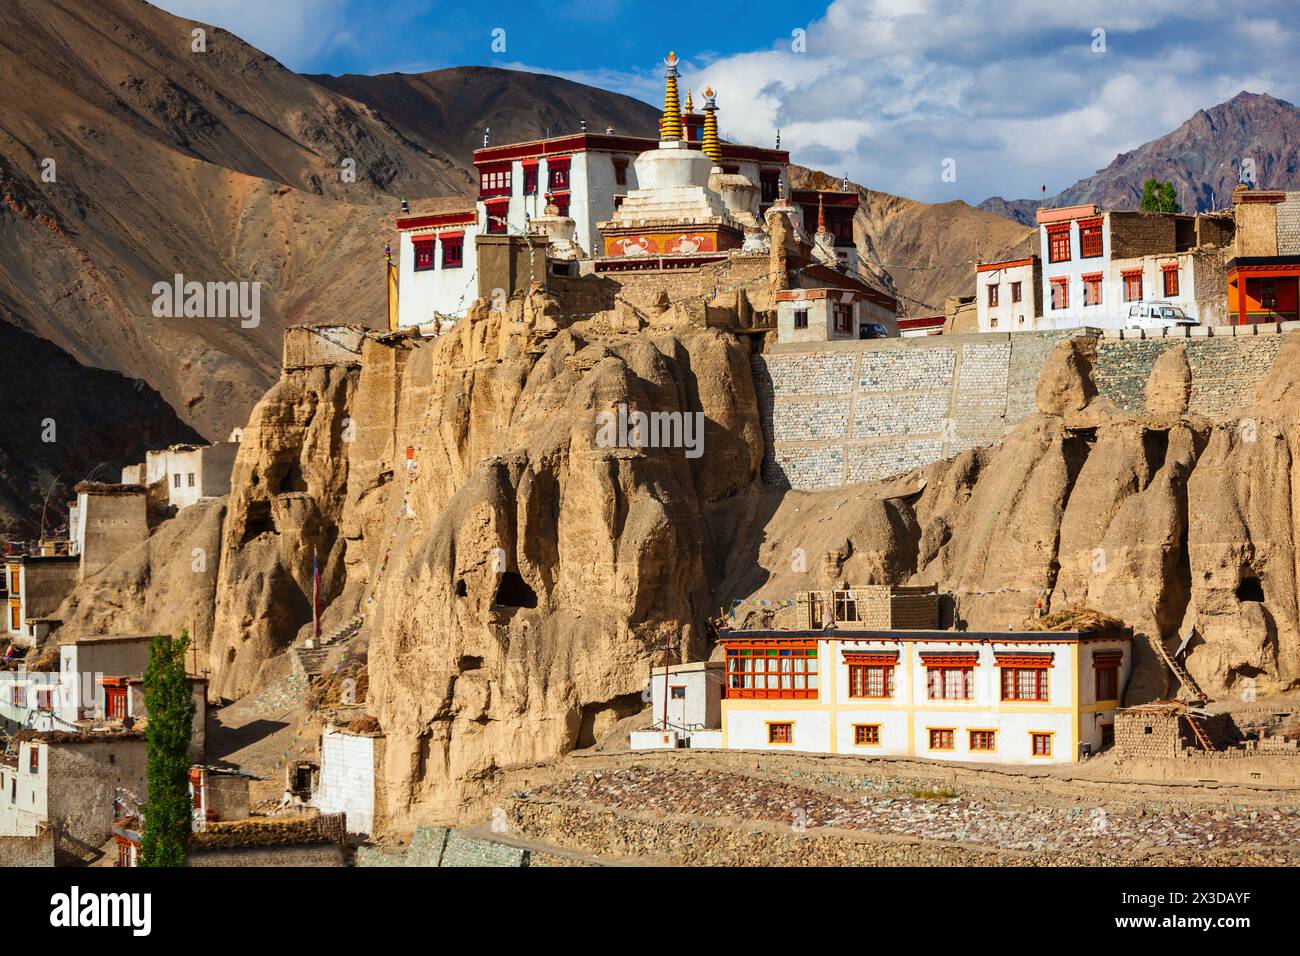 Monastère de Lamayuru ou Gompa est un monastère bouddhiste de style tibétain dans le village de Lamayuru à Ladakh, dans le nord de l'Inde Banque D'Images